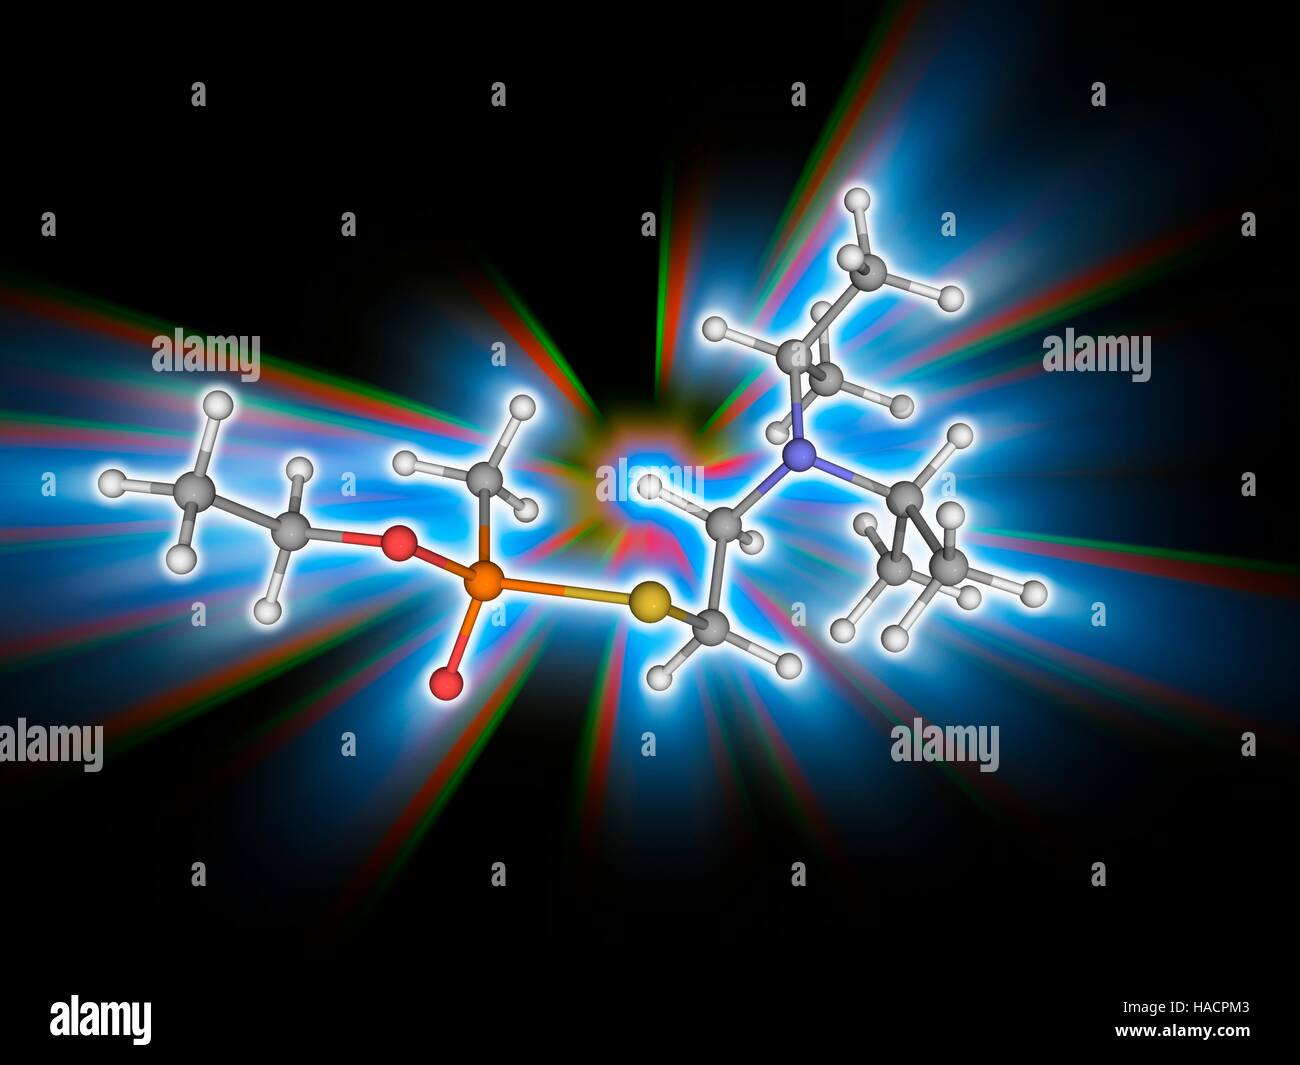 VX-Nervengas. Molekülmodell äußerst toxisches Nervengift VX (C11. H26. N.O2. PS), als eine Massenvernichtungswaffe in chemische Kampfstoffe verwendet. Atome als Kugeln dargestellt werden und sind farblich gekennzeichnet: Kohlenstoff (grau), Wasserstoff (weiß), Stickstoff (blau), Sauerstoff (rot), Schwefel (gelb) und Phosphor (orange). Abbildung. Stockfoto